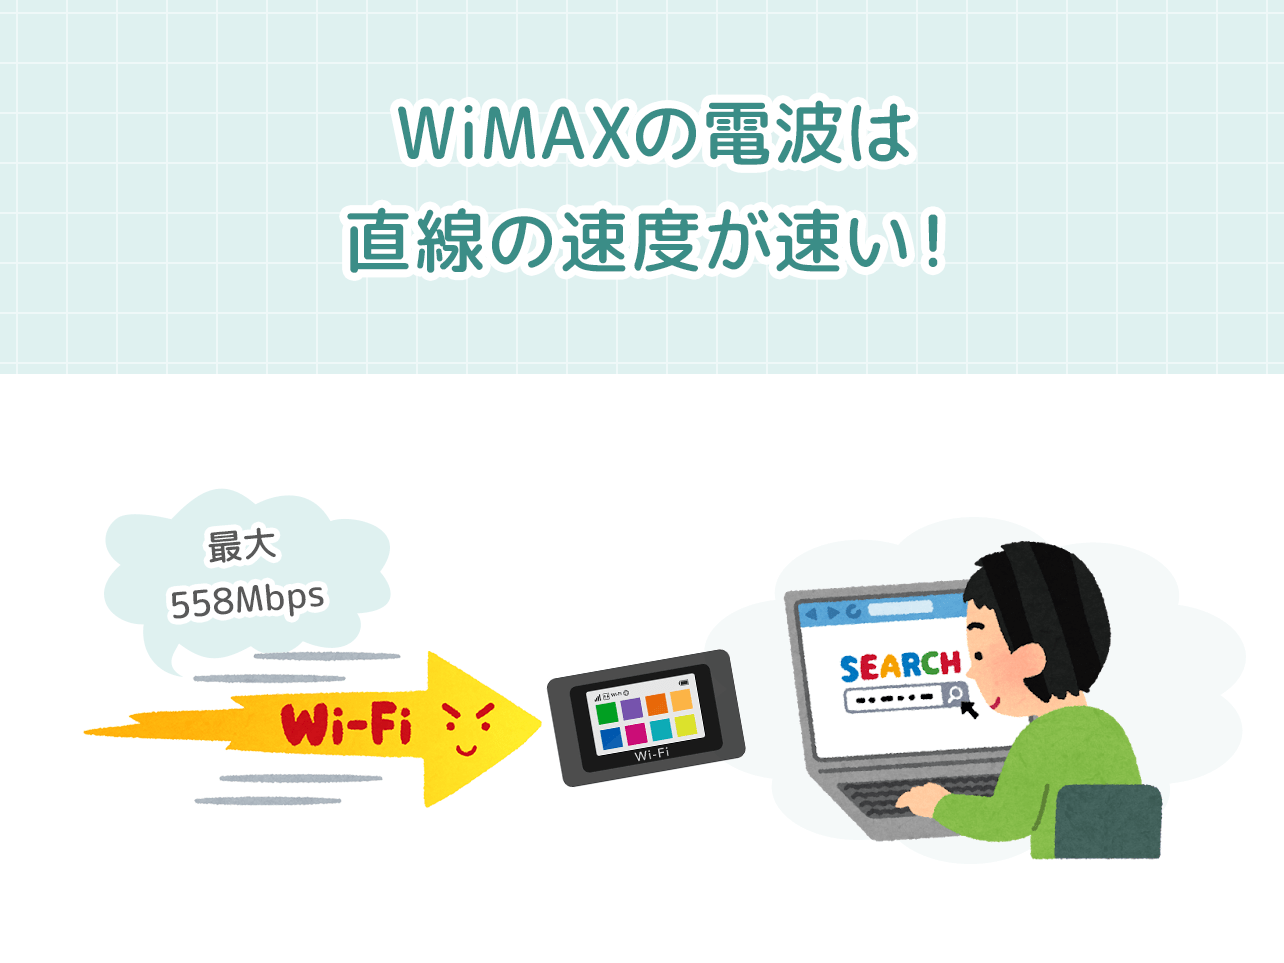 WiMAXは電波の直線の速度が速い